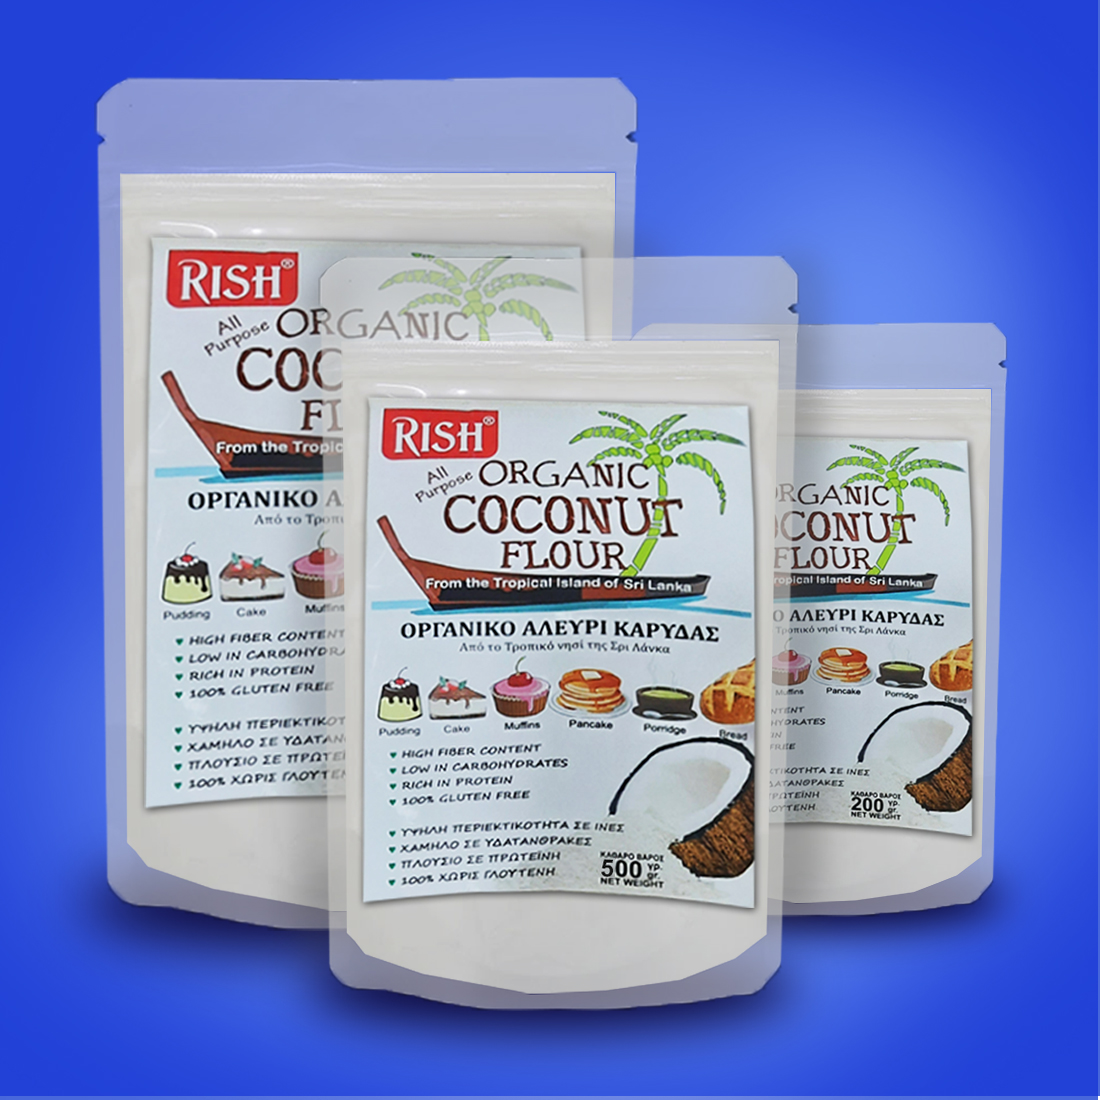 RISH Coconut Flour